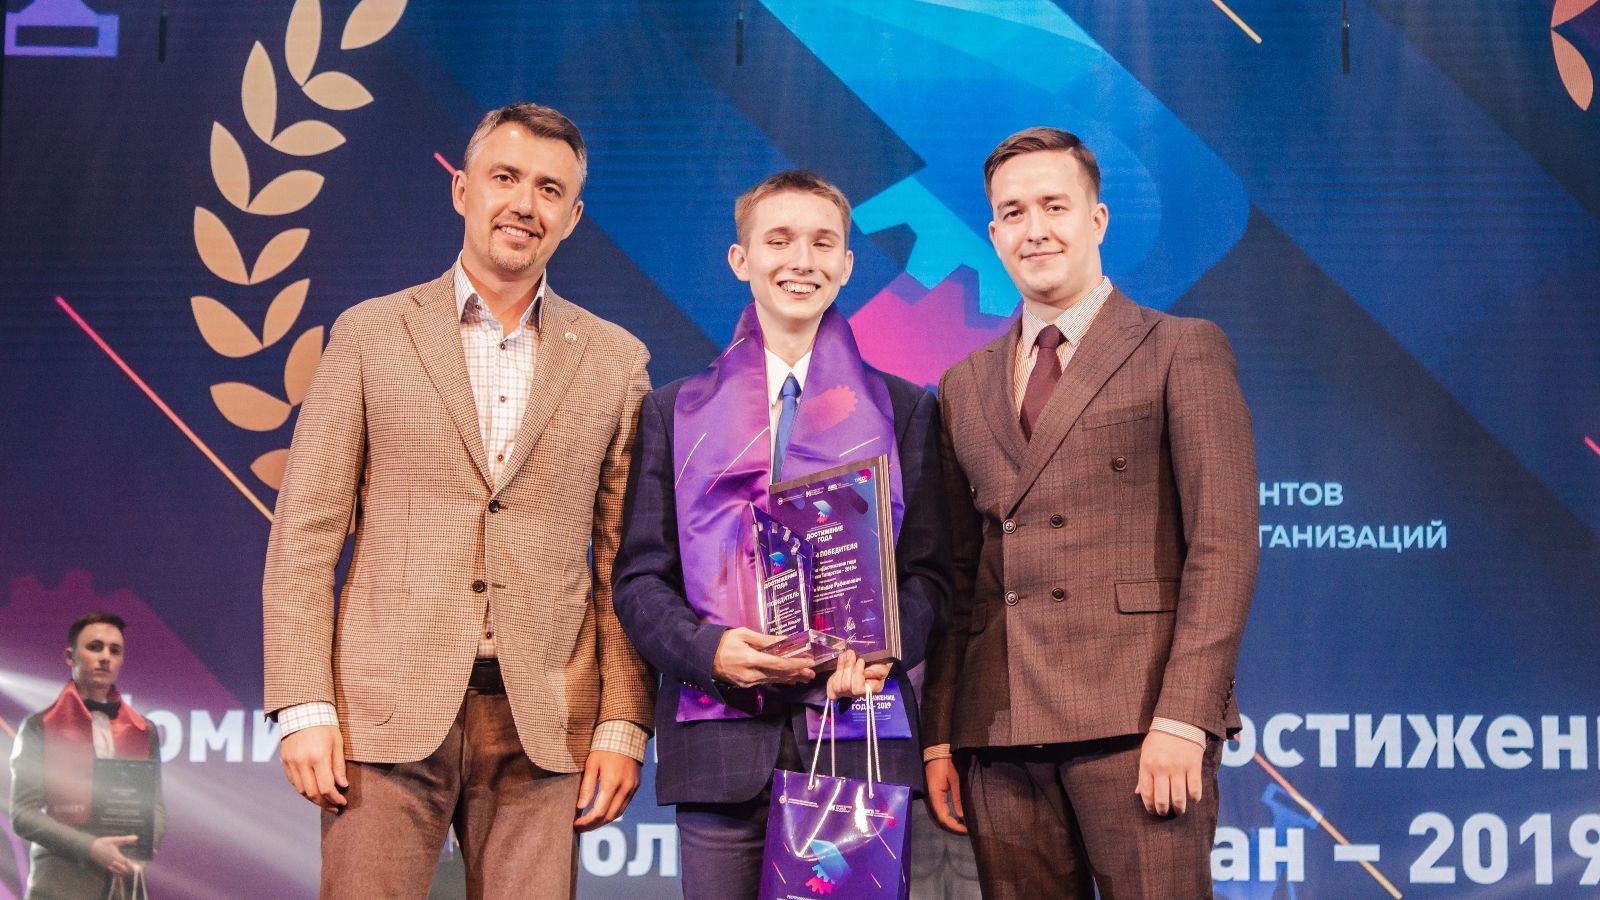 Подведены итоги республиканского конкурса «Достижение года Республики Татарстан — 2019»